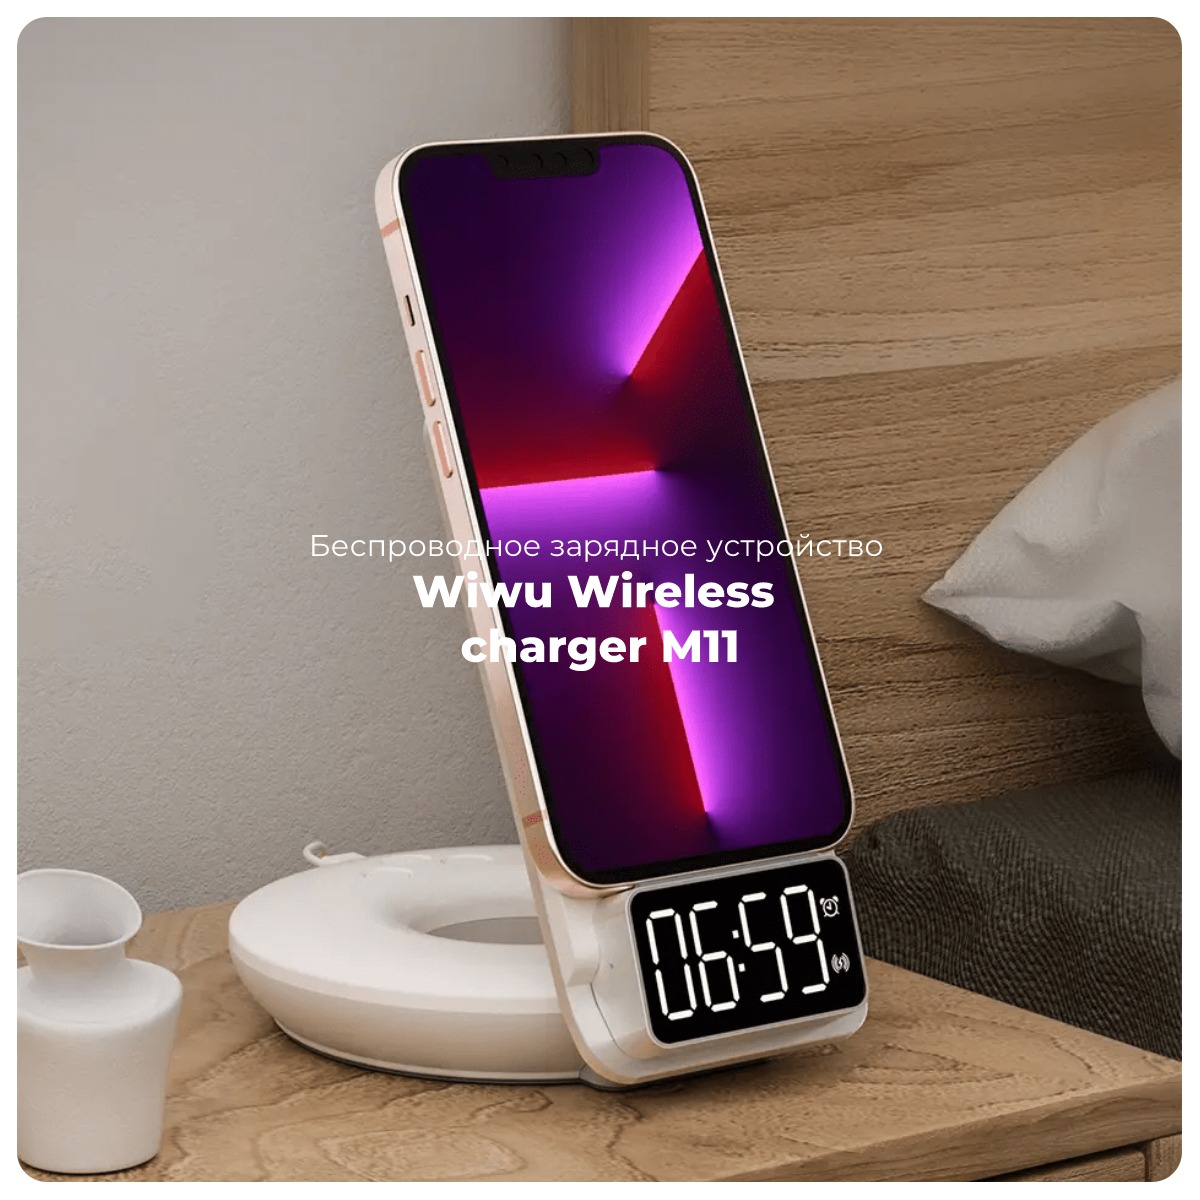 Wiwu-Wireless-charger-M11-01